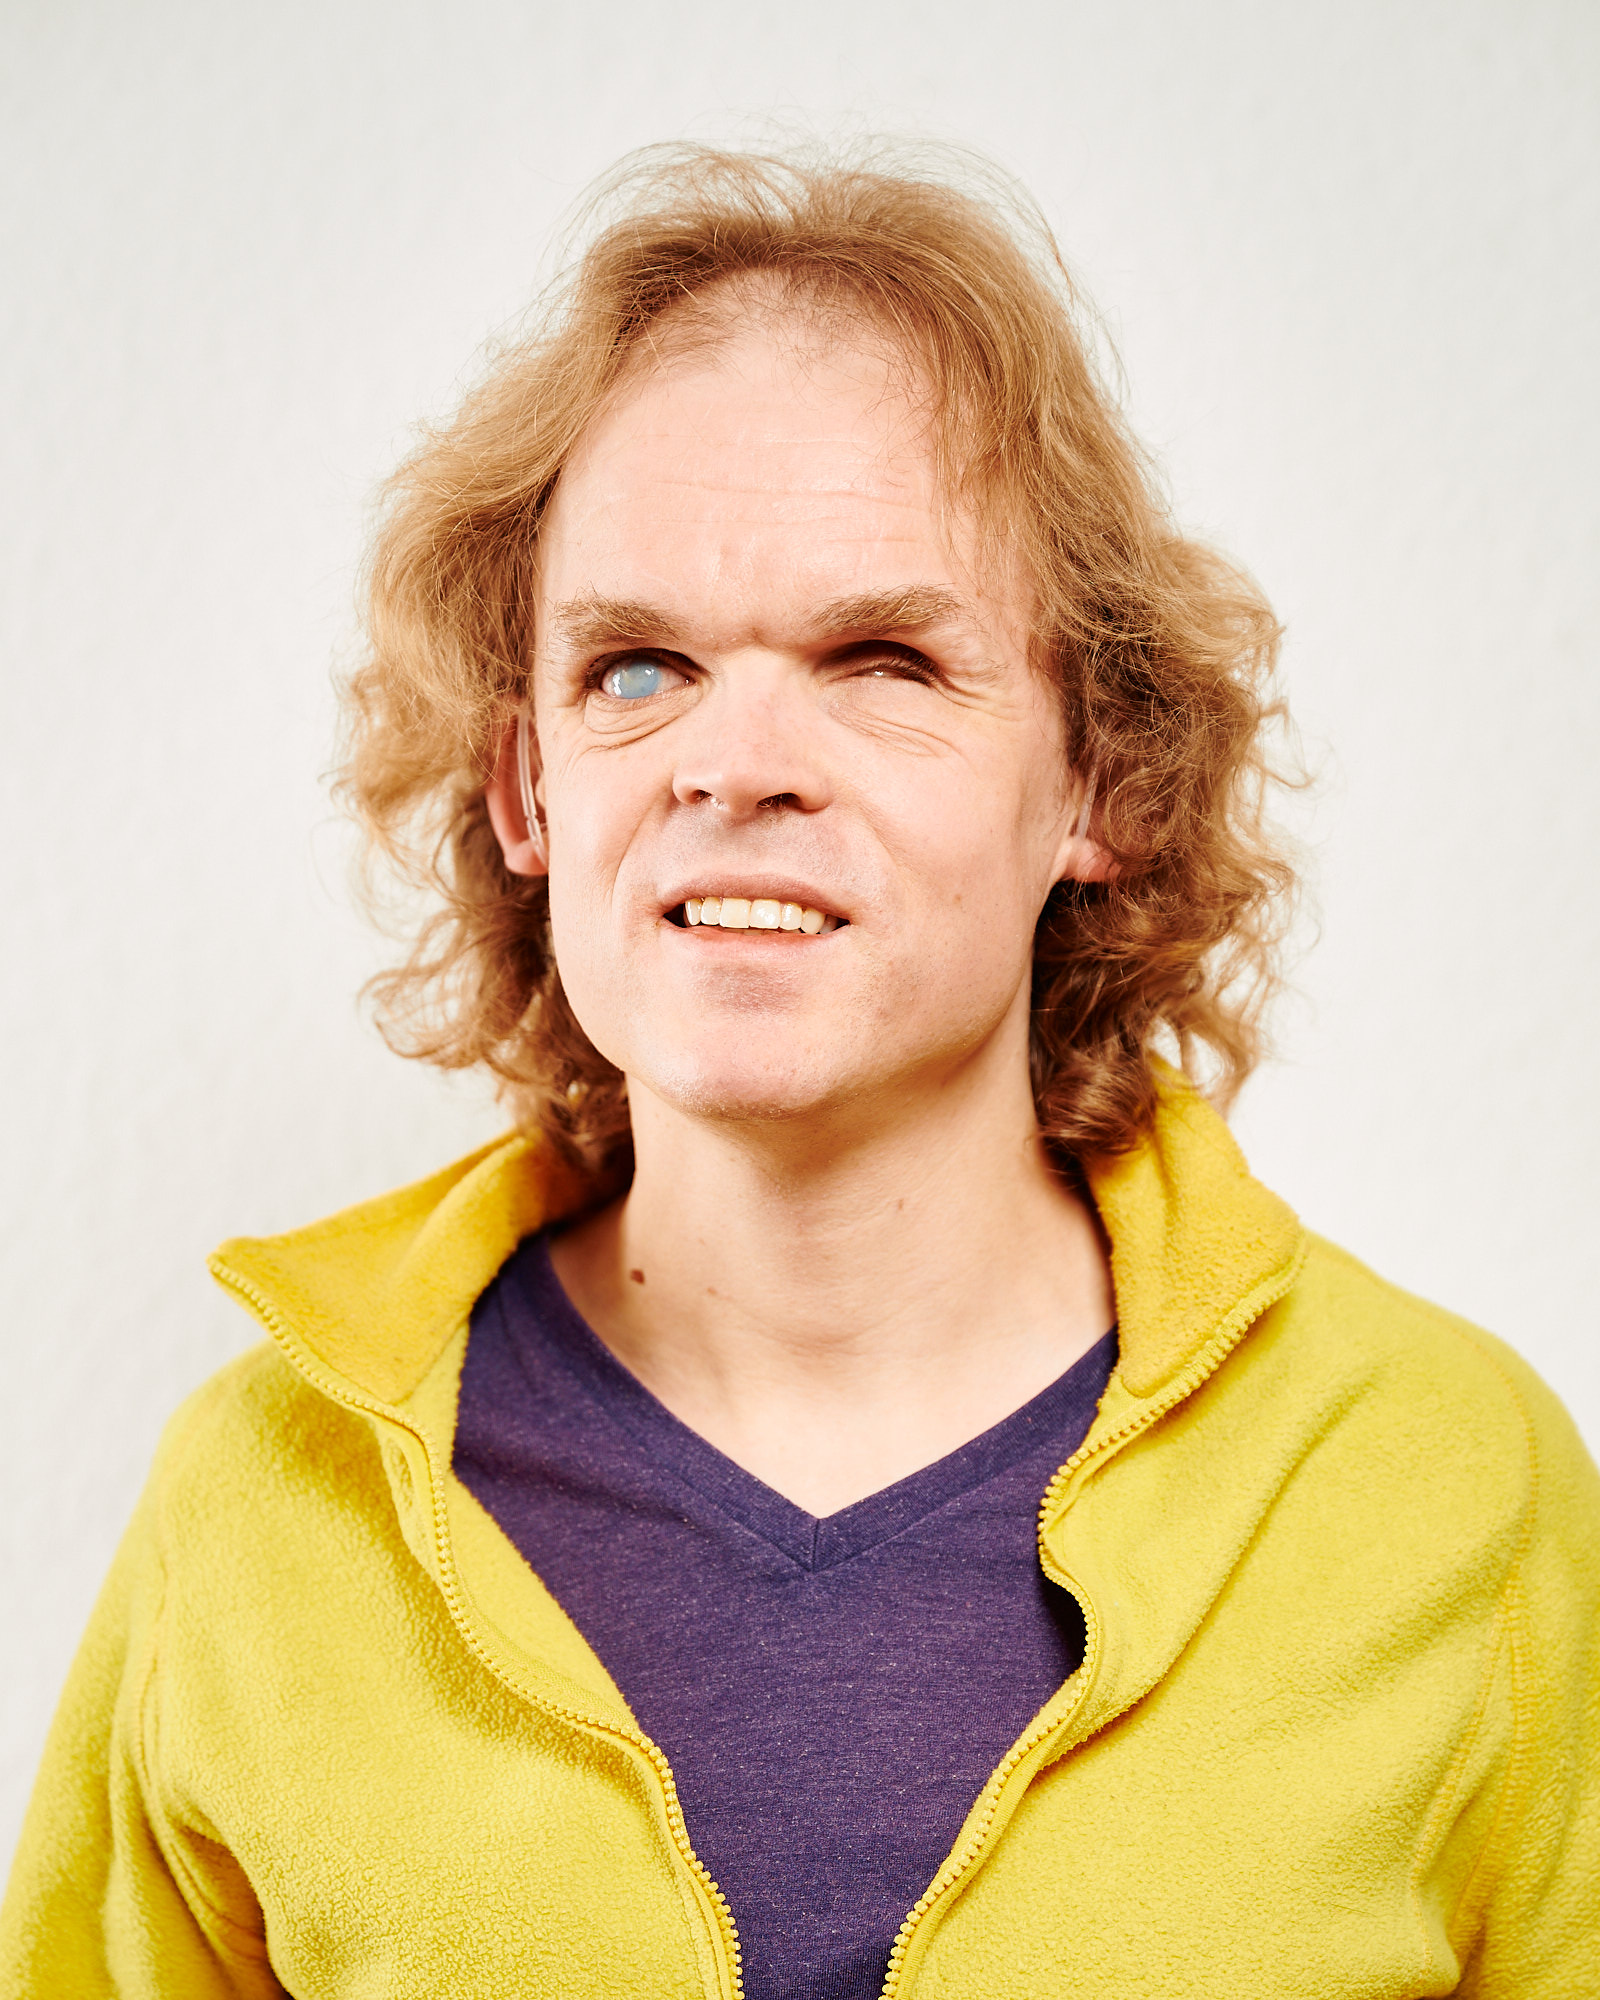 Dieses Bild zeigt Arne. Er hat lange, hellbraune, lockige Haare. Er trägt ein lila T-Shirt und einen gelben Fleece-Pullover. 